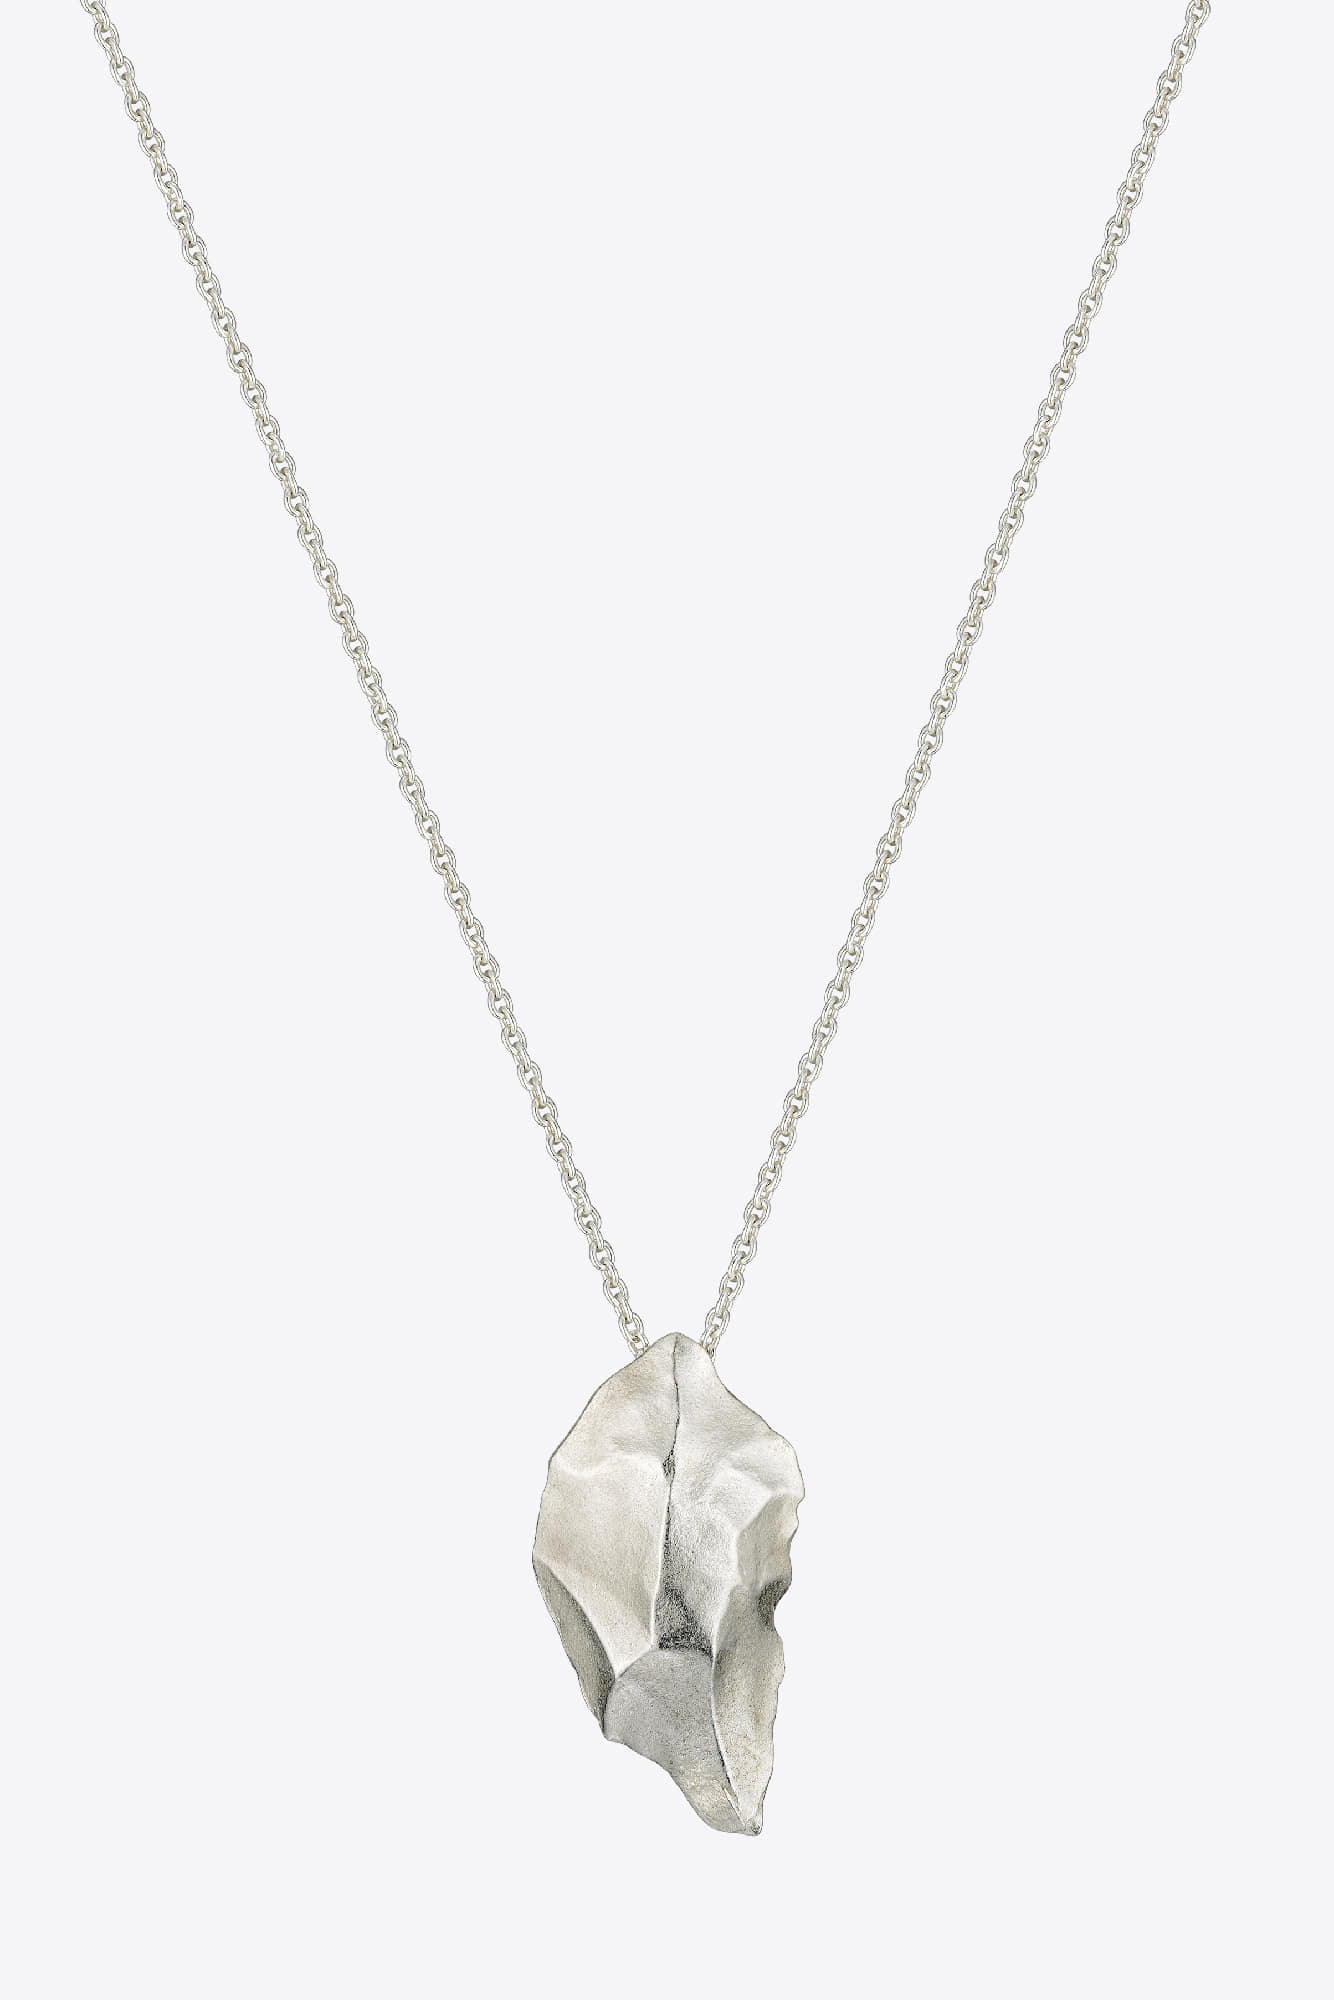 Stone Necklace, 199,000KRW